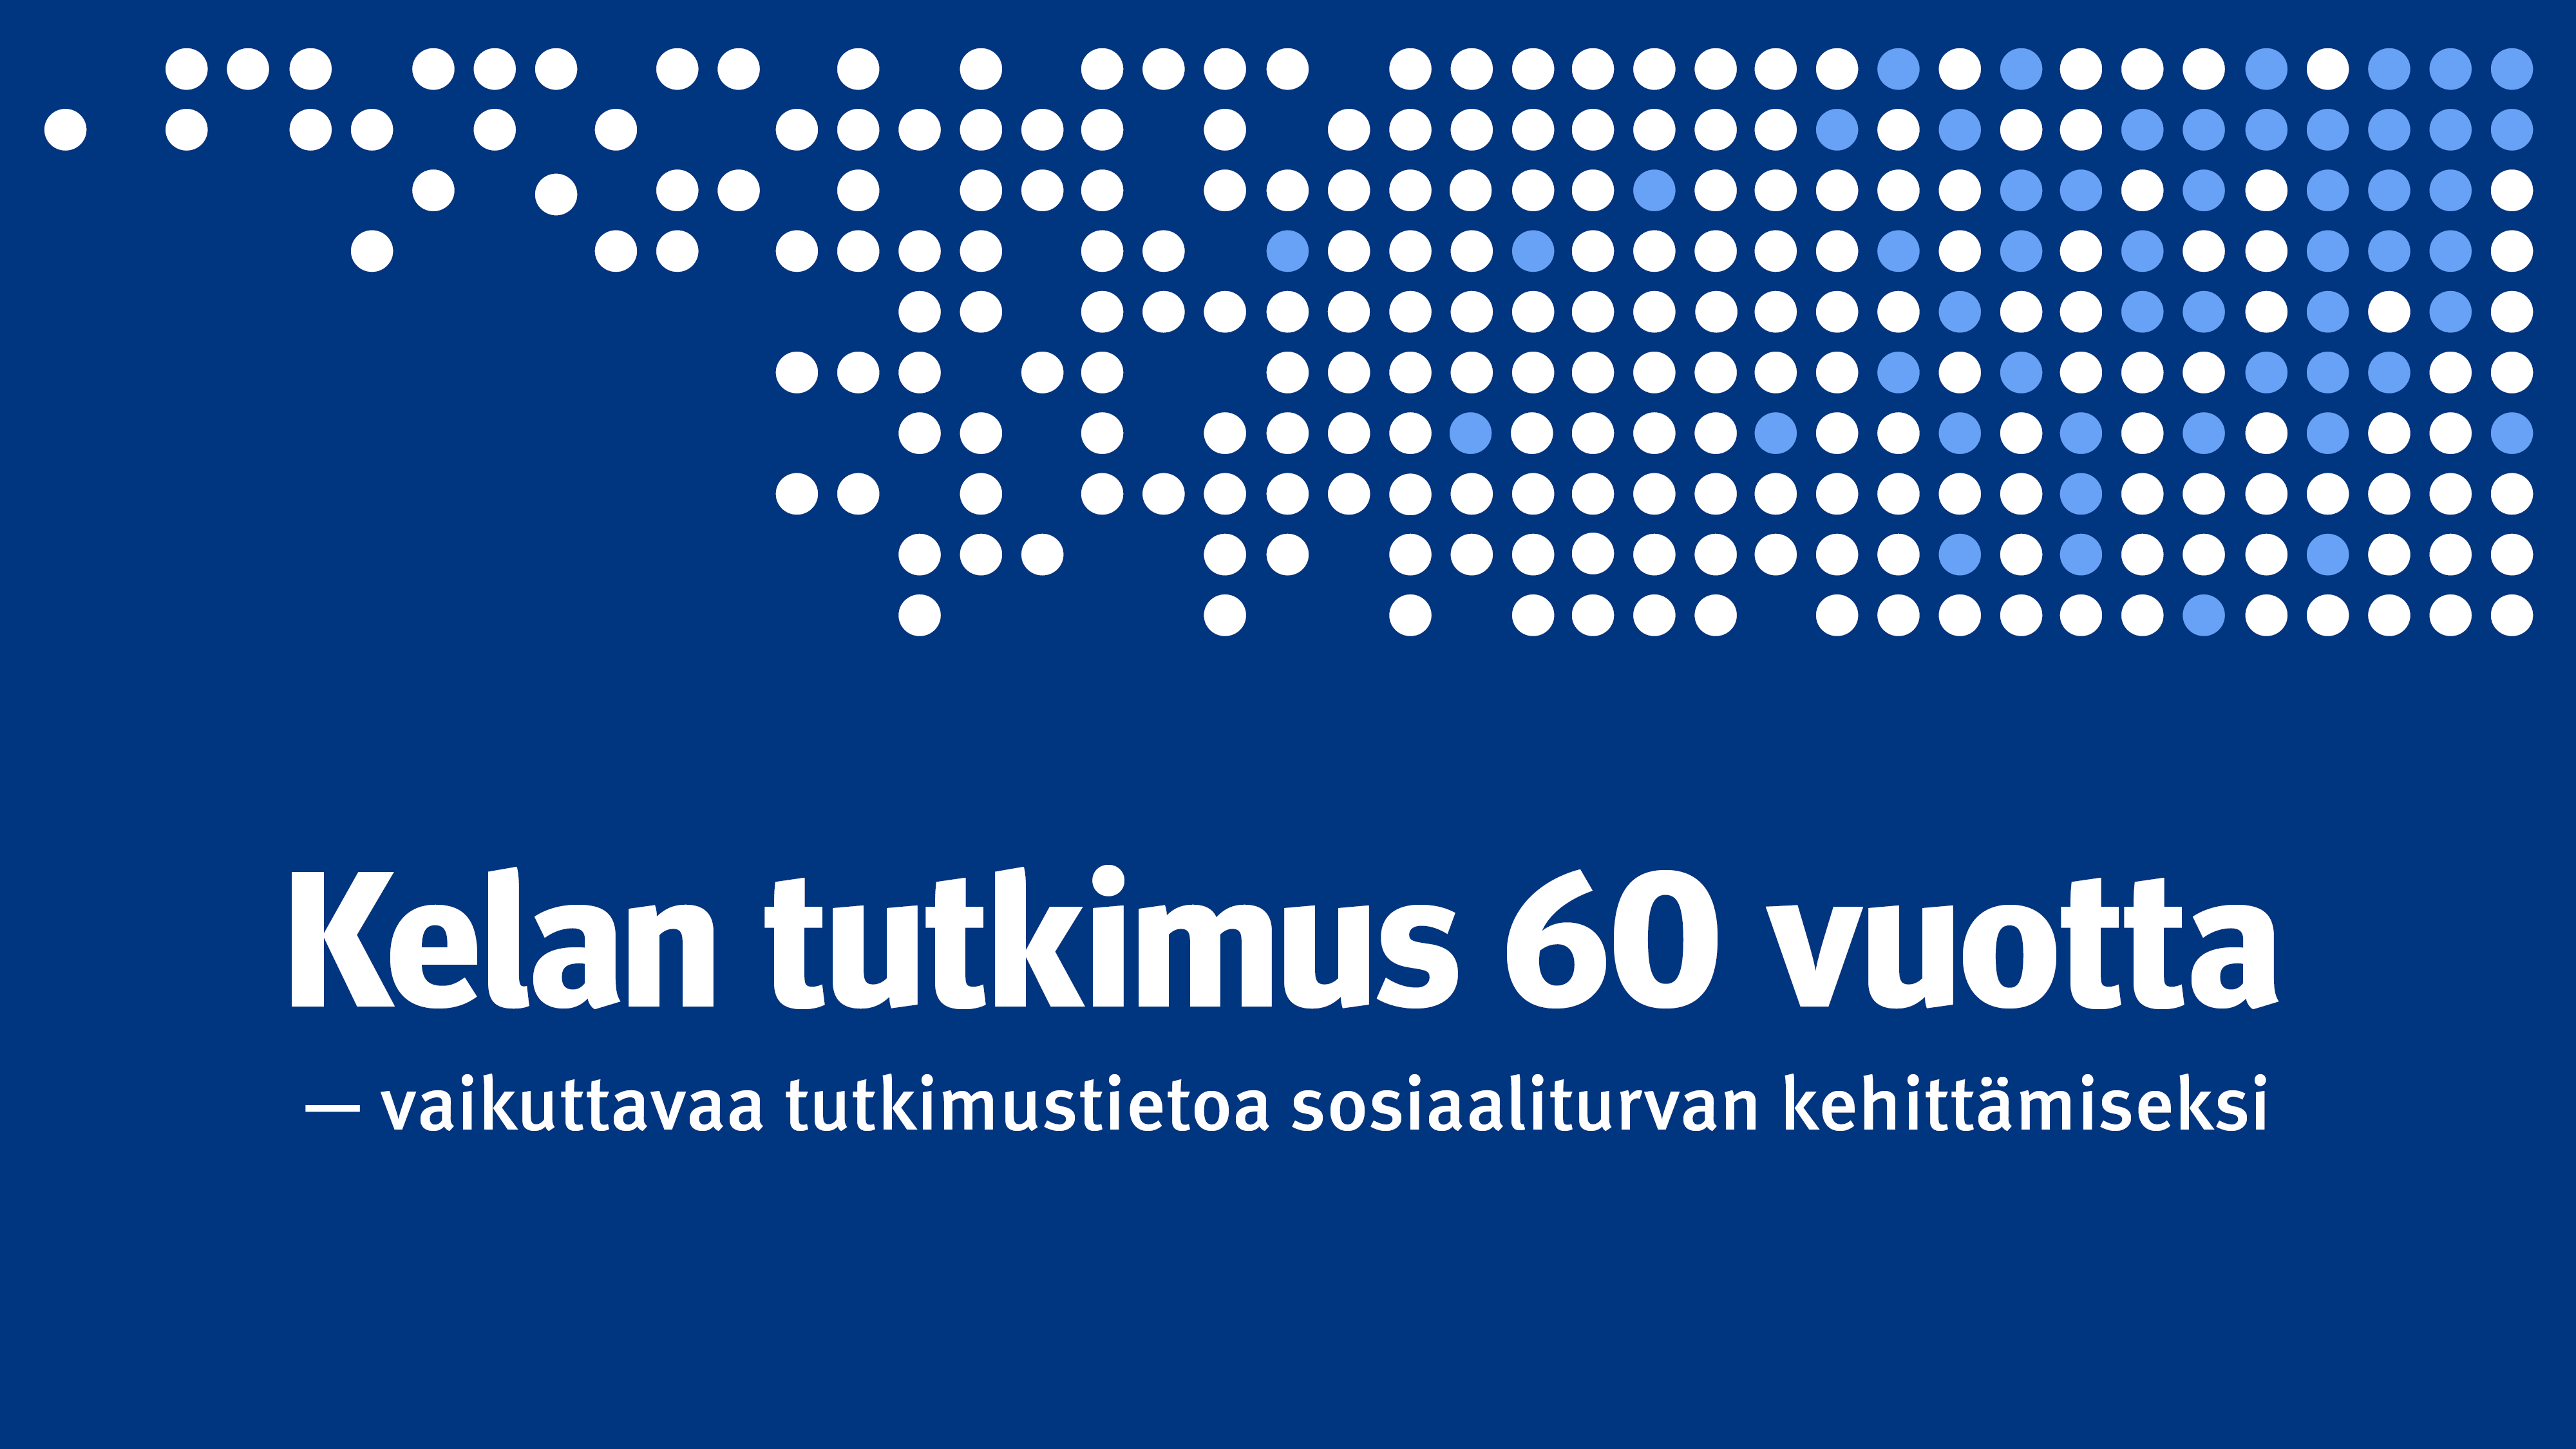 Teksti "Kelan tutkimus 60 vuotta – vaikuttavaa tutkimustietoa sosiaaliturvan kehittämiseksi".